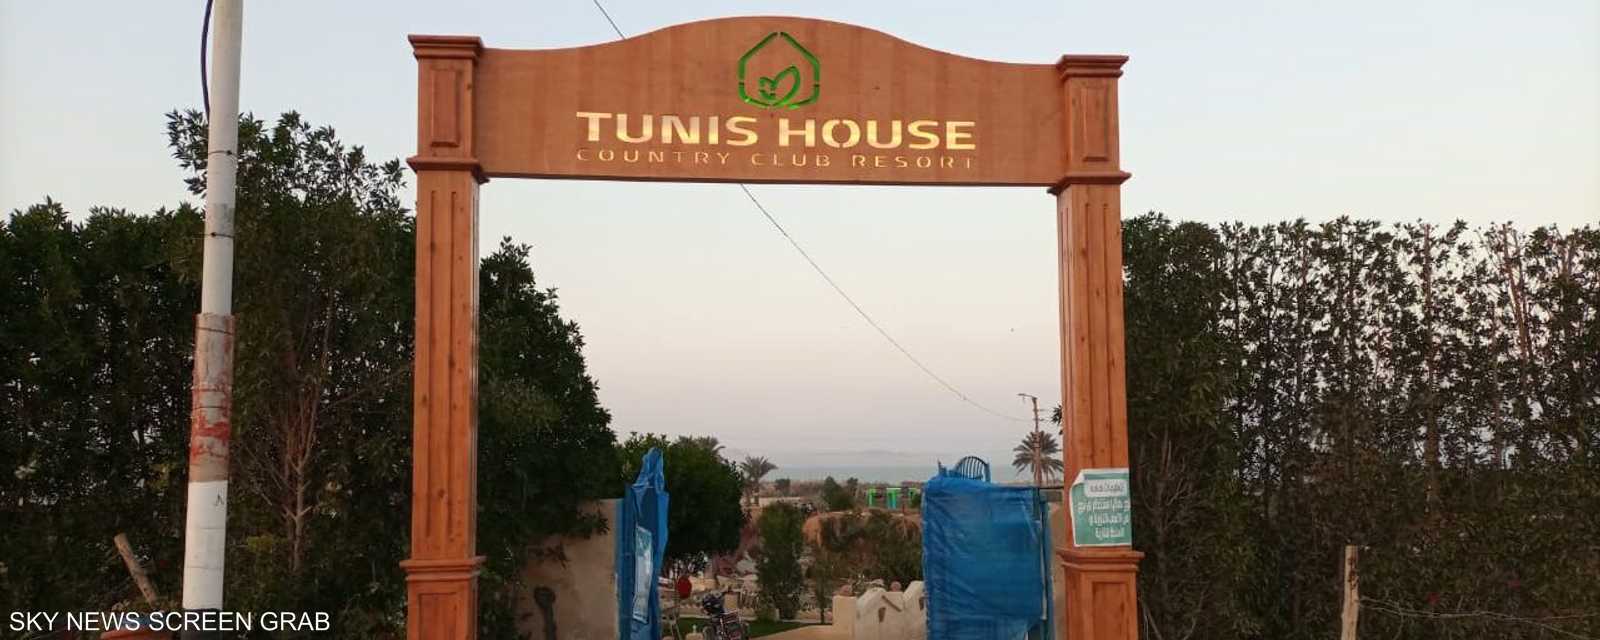 على بعد أكثر من 100 كيلومتر جنوب القاهرة المصرية تقع قرية تونس الشهيرة بمحافظة الفيوم، والمتخصصة في تعليم صناعة الخزف والفخار.